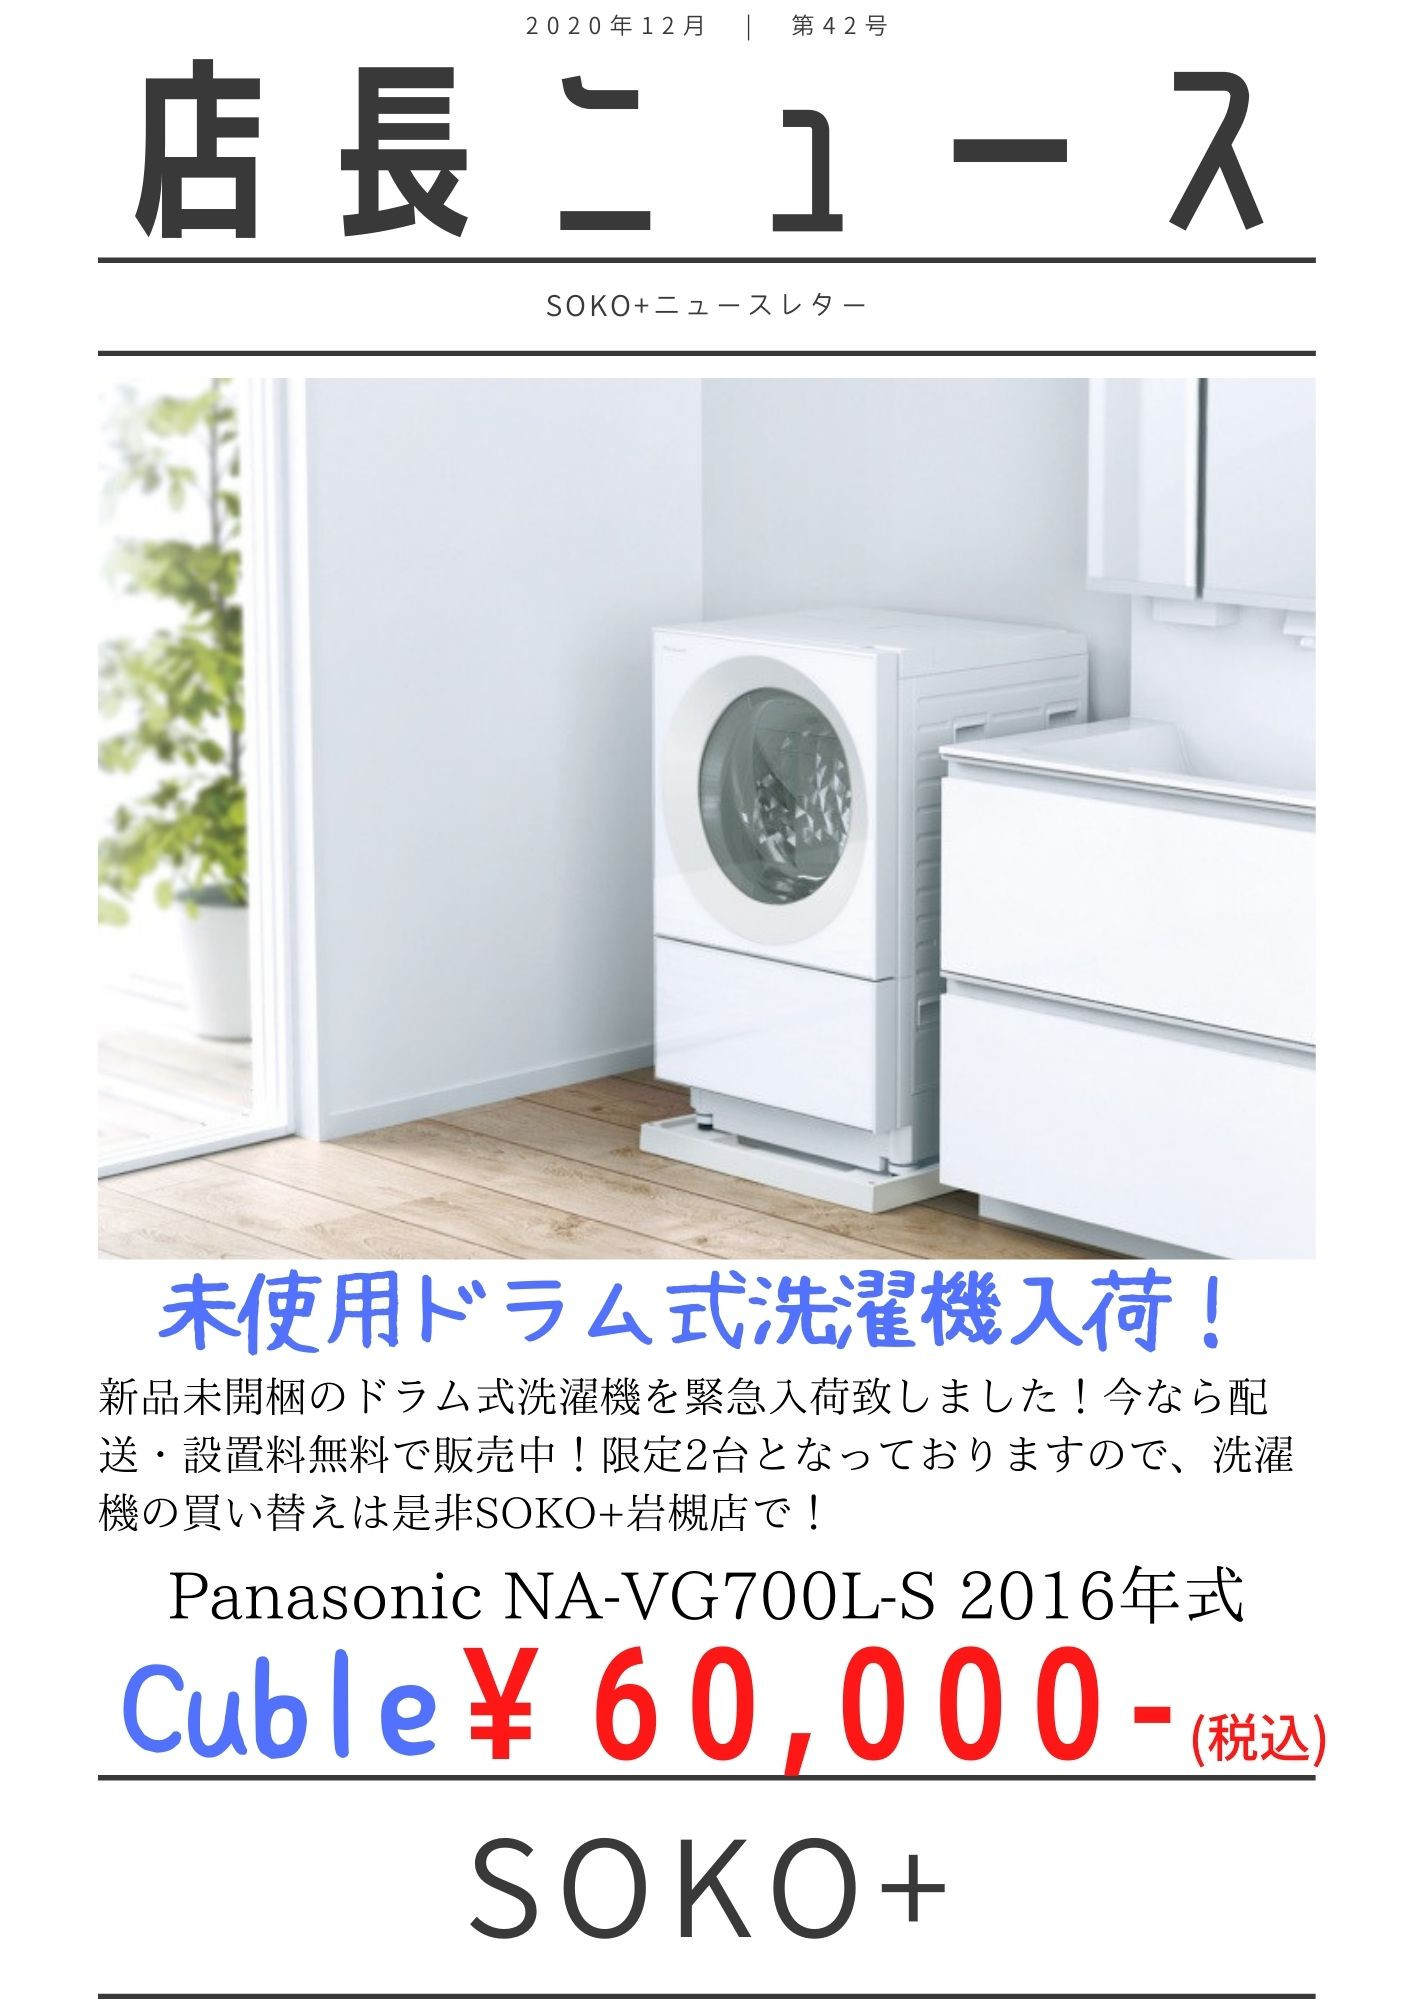 ドラム式洗濯乾燥機 キューブル Panasonic NA-VG700L - 洗濯機